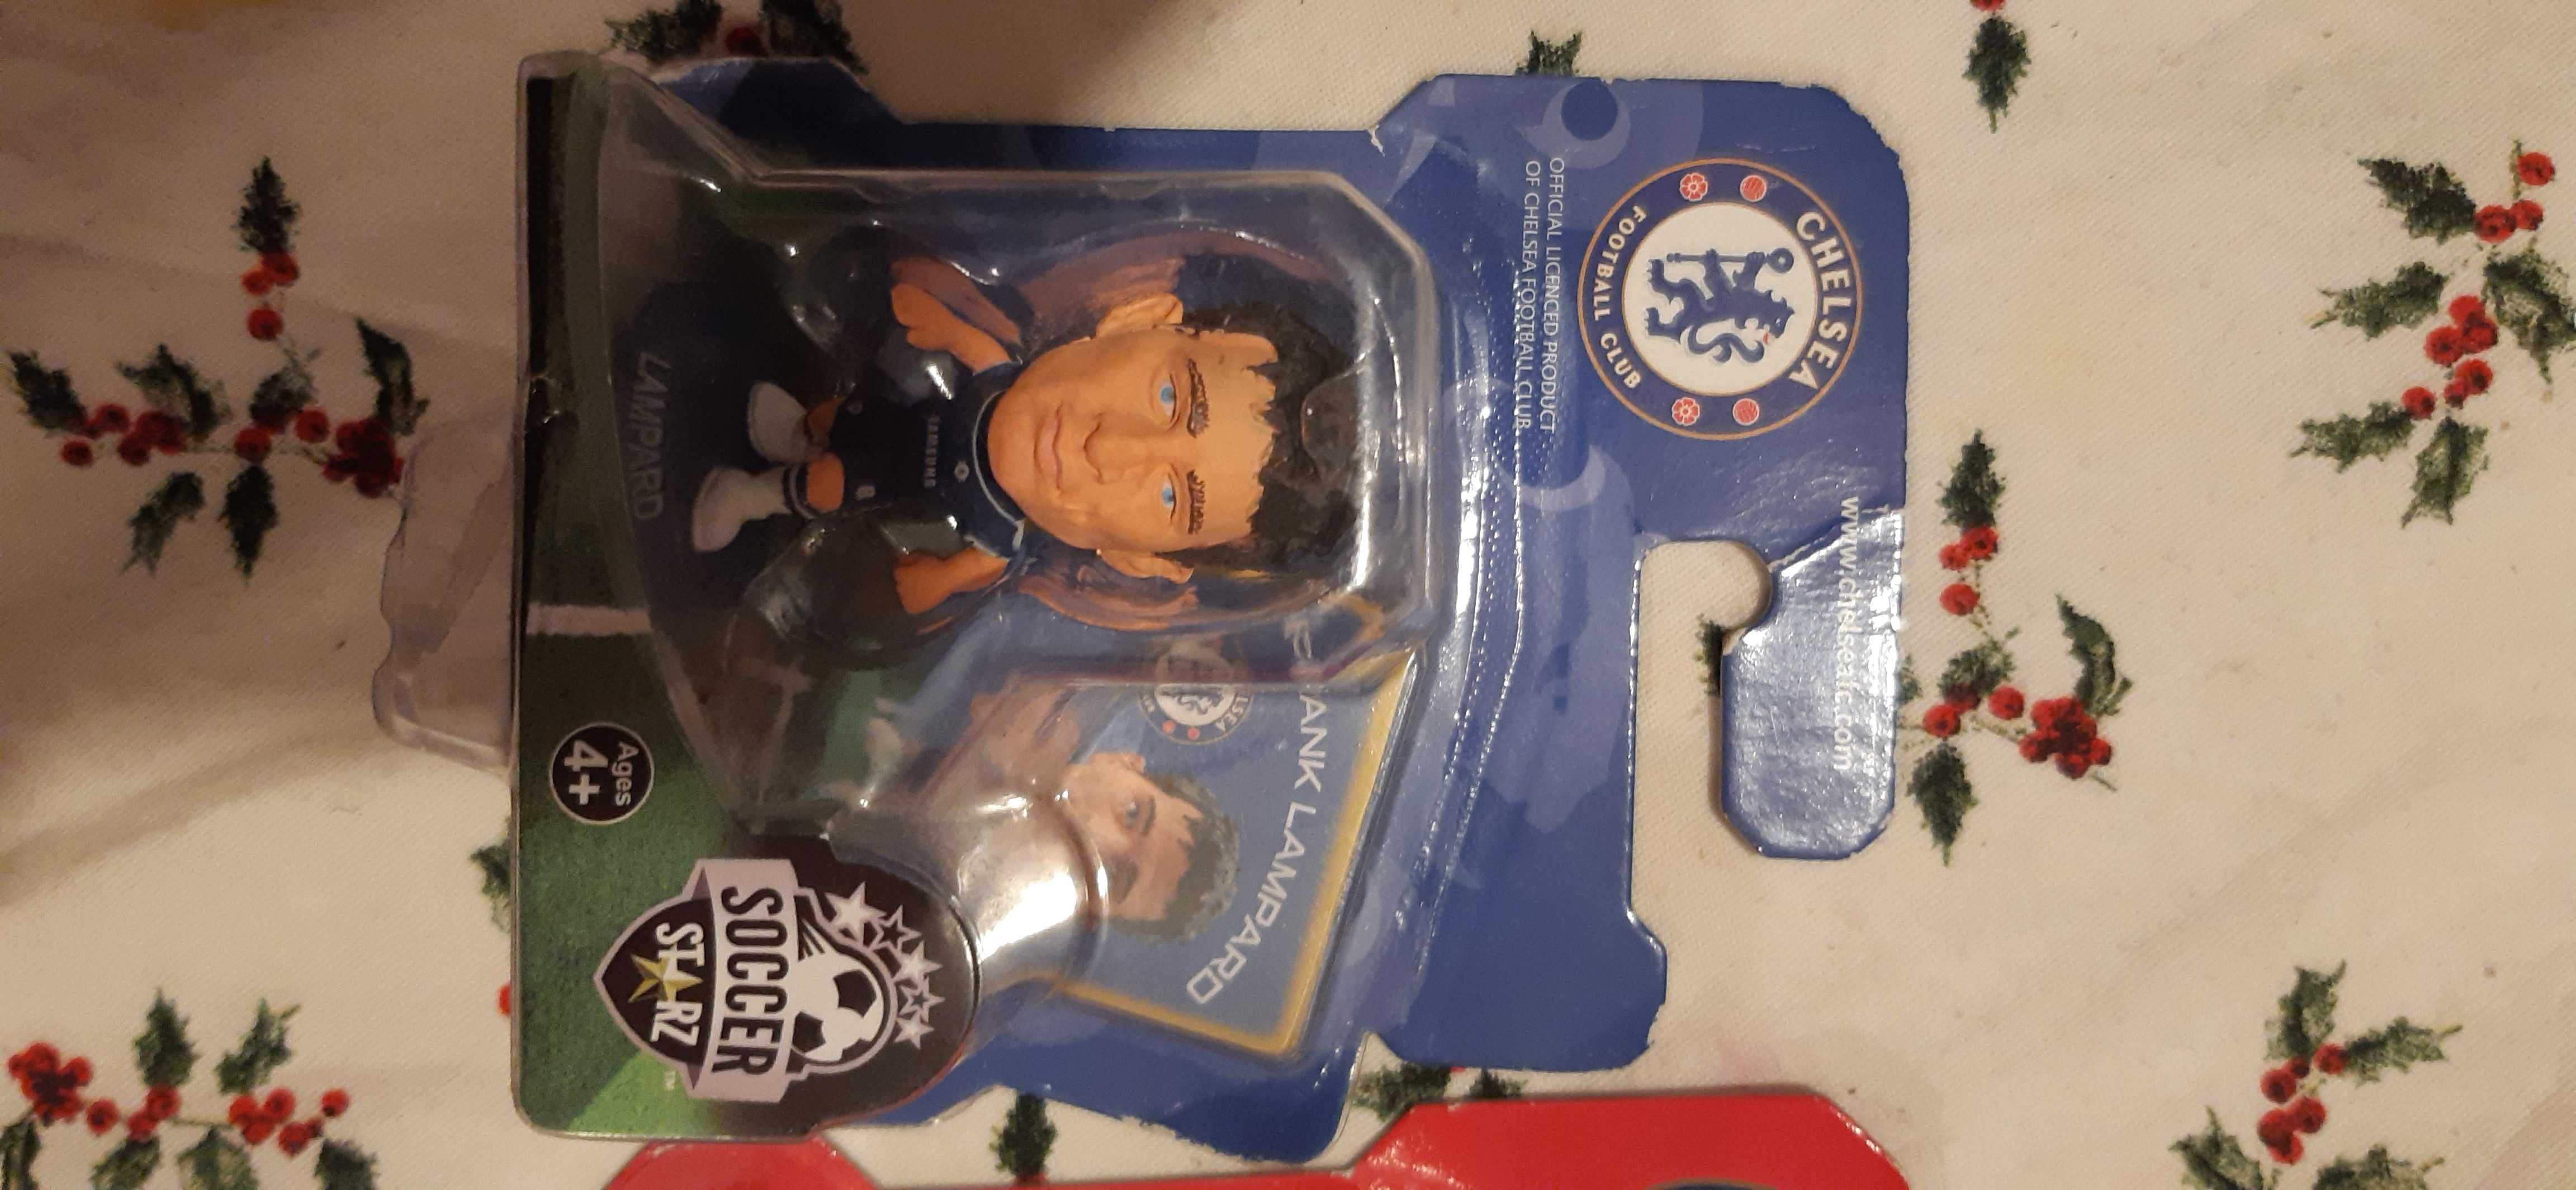 2 figurki SoccerStarz - Szczęsny i Lampard, chelsea i arsenal